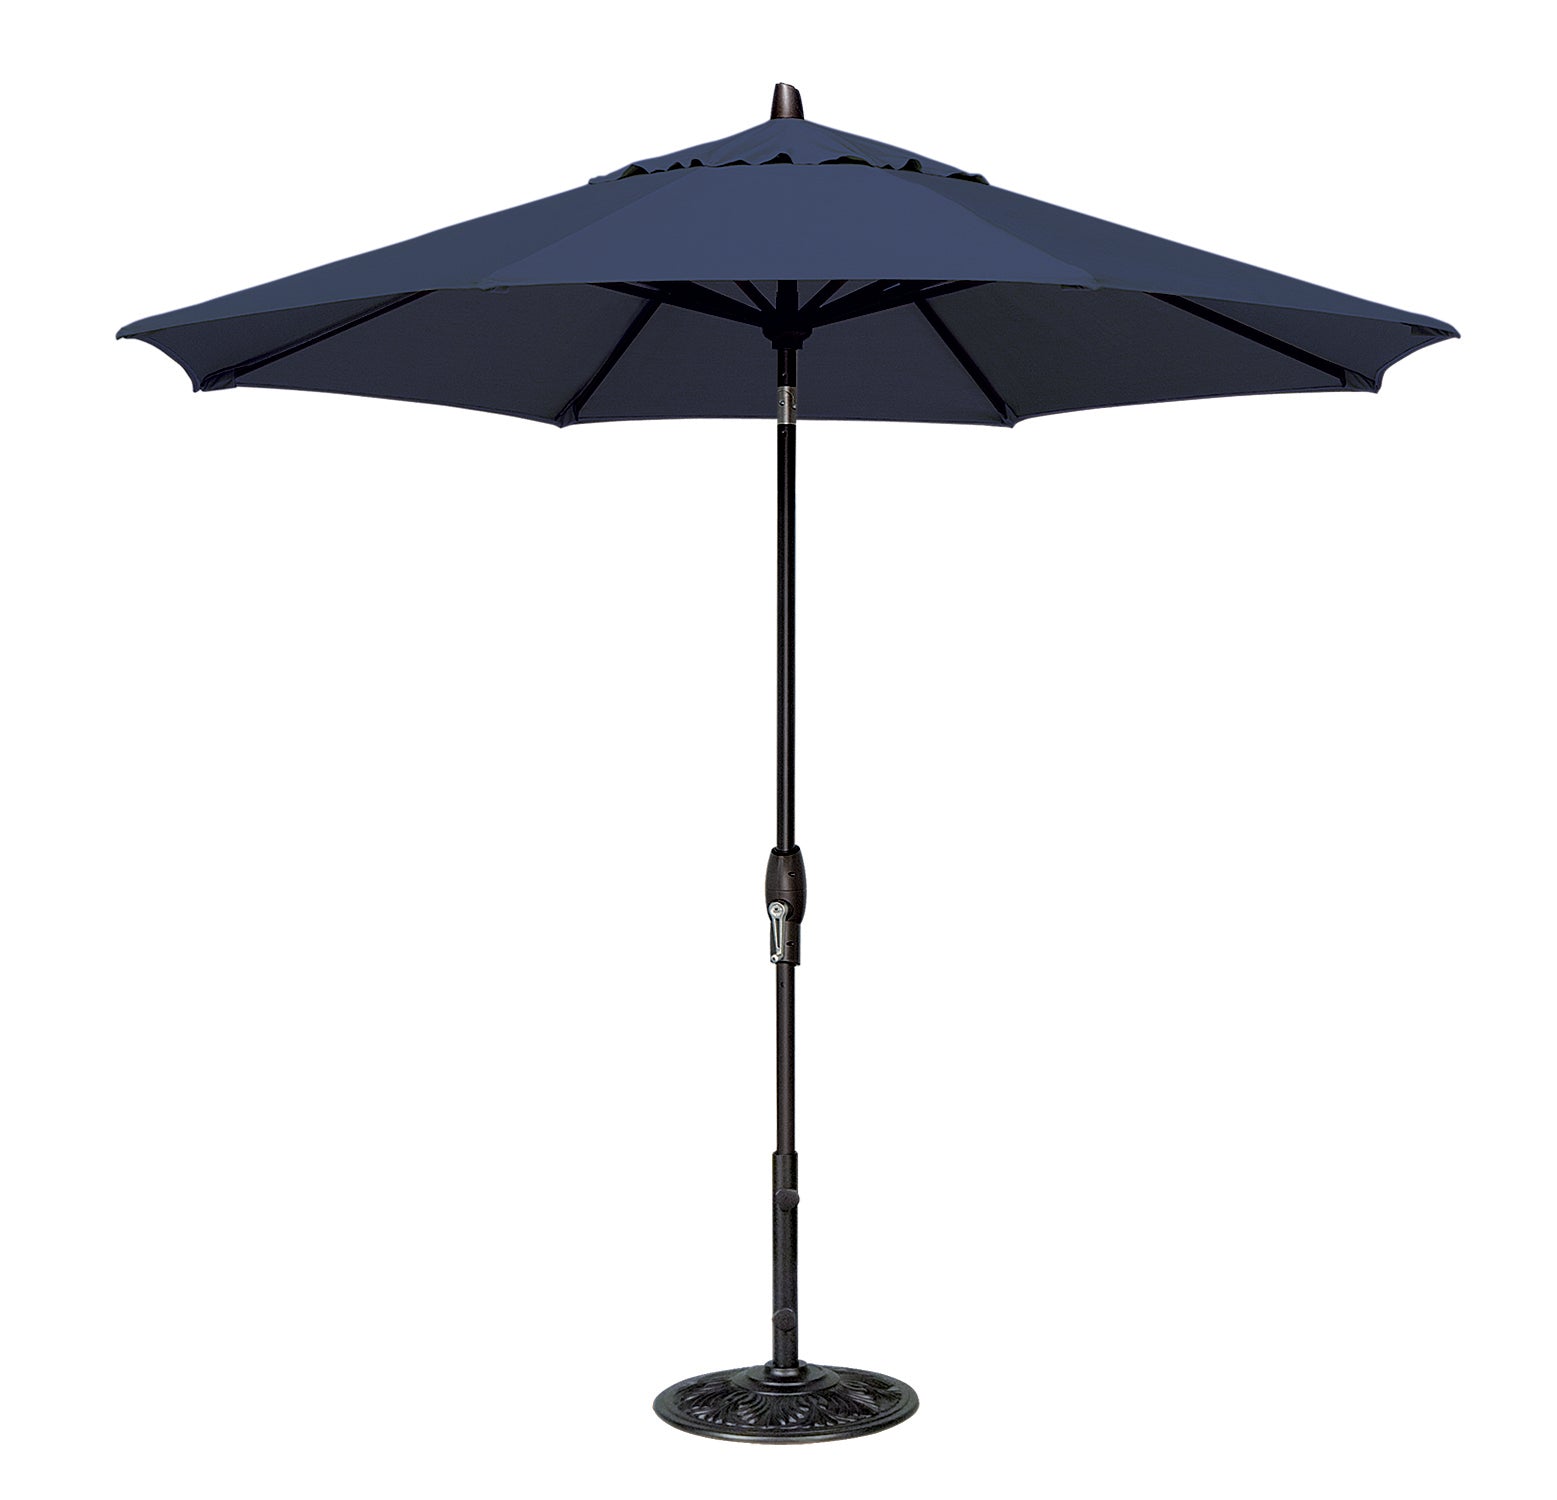 Treasure Garden 9' Octagon Auto Tilt Umbrella with Black Frame